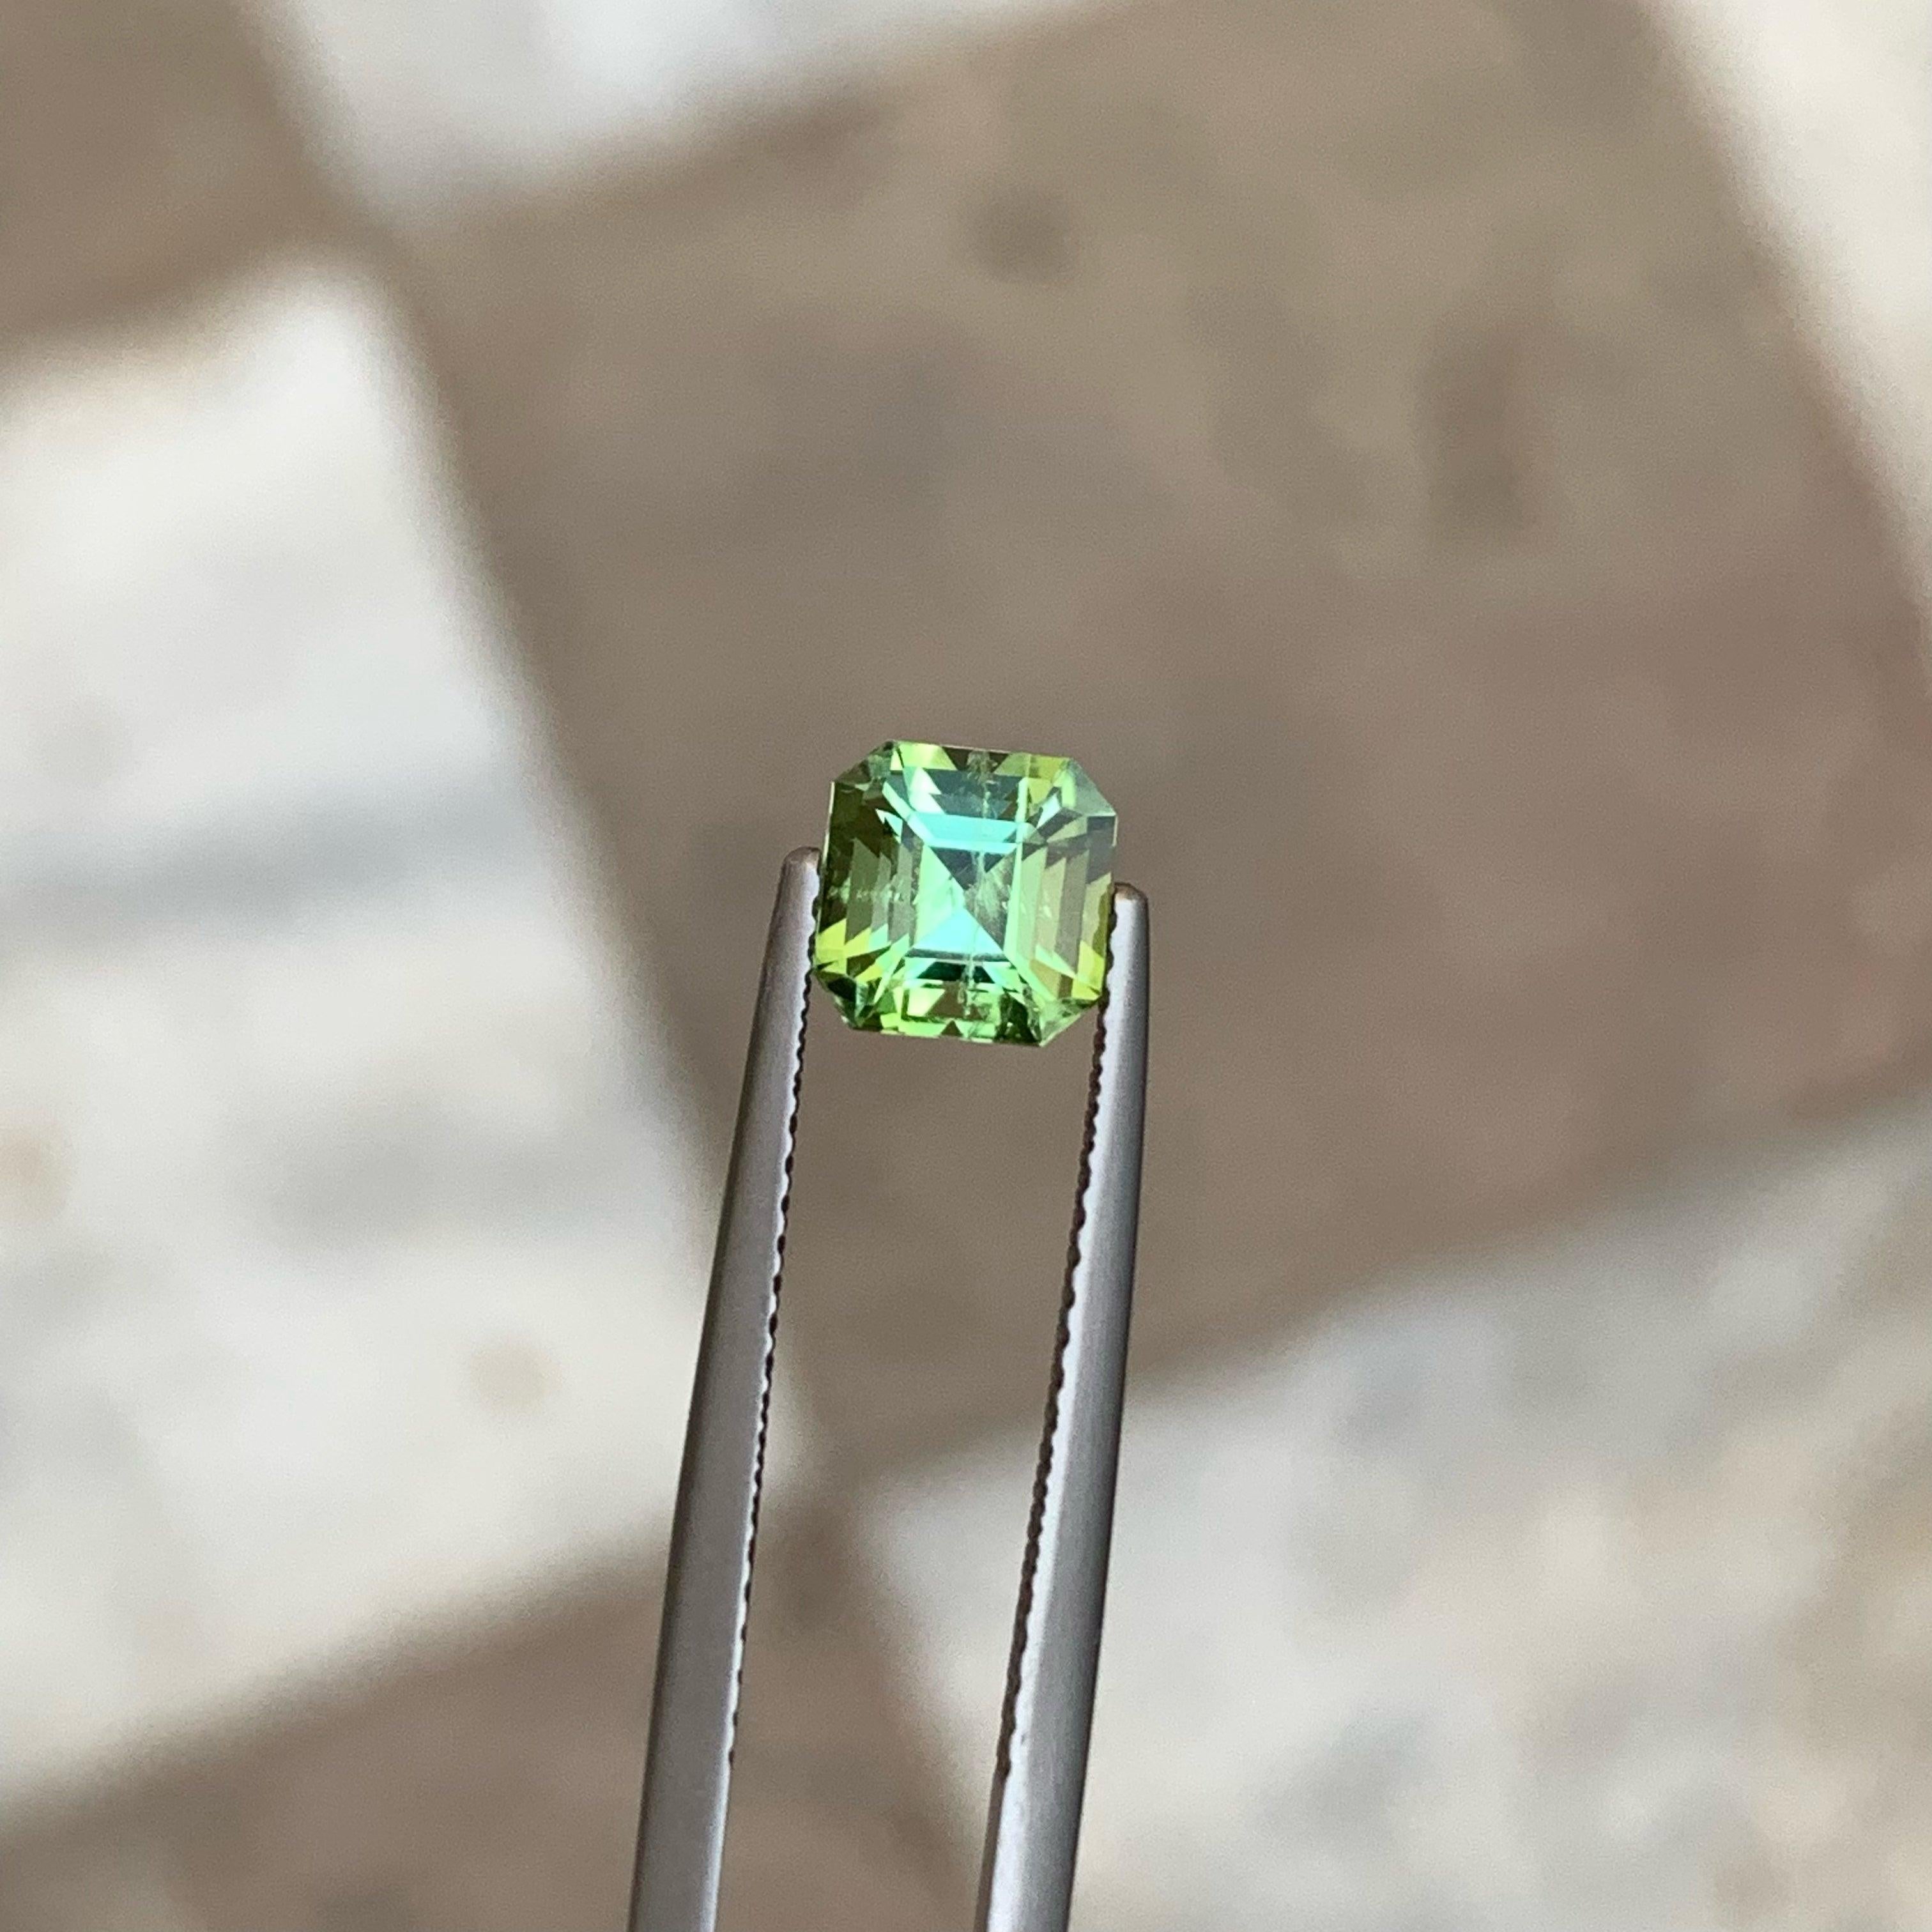 Magnifique tourmaline bleu verdâtre de 1,25 carats provenant d'Afghanistan. Magnifique coupe en forme d'octogone, incroyable couleur bleu verdâtre. Une grande brillance. Cette pierre précieuse est de pureté SI.

Informations sur le produit
TYPE DE